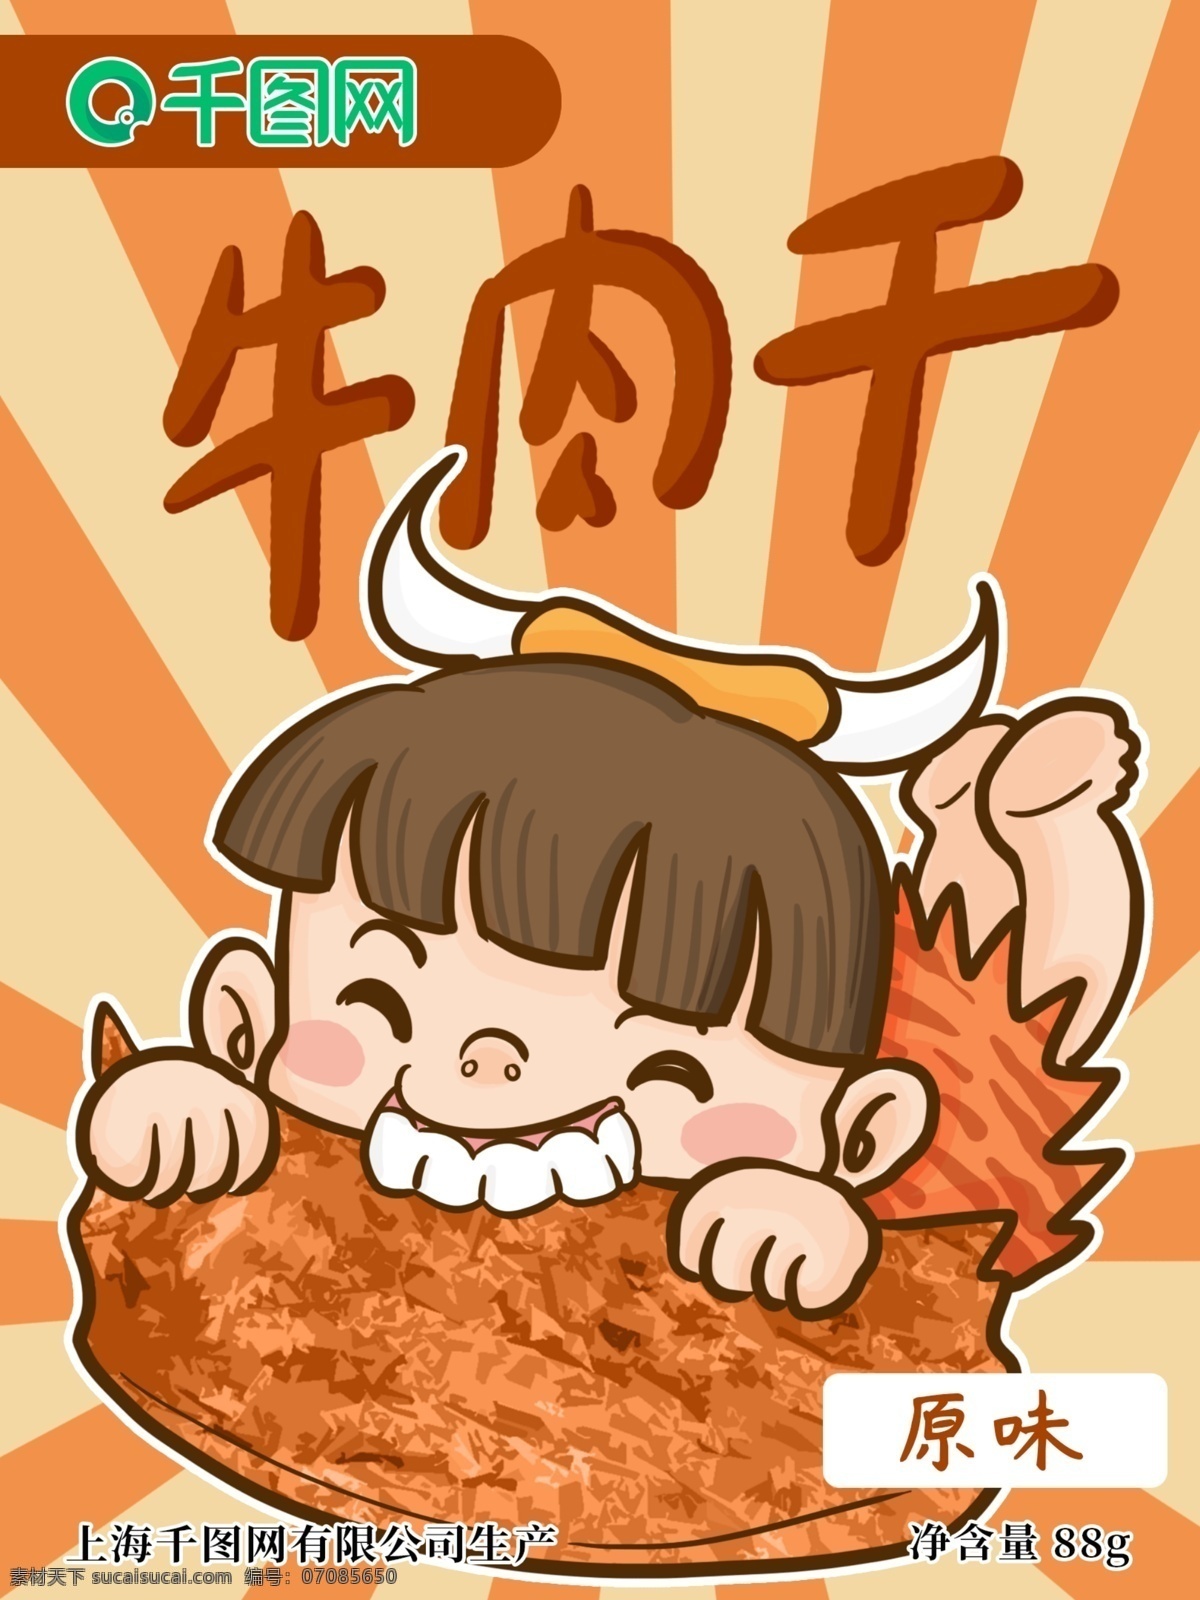 原始人 小孩 开心 咬 牛肉干 包装 手绘 插画 原始 牛肉 原味 logo 卡通